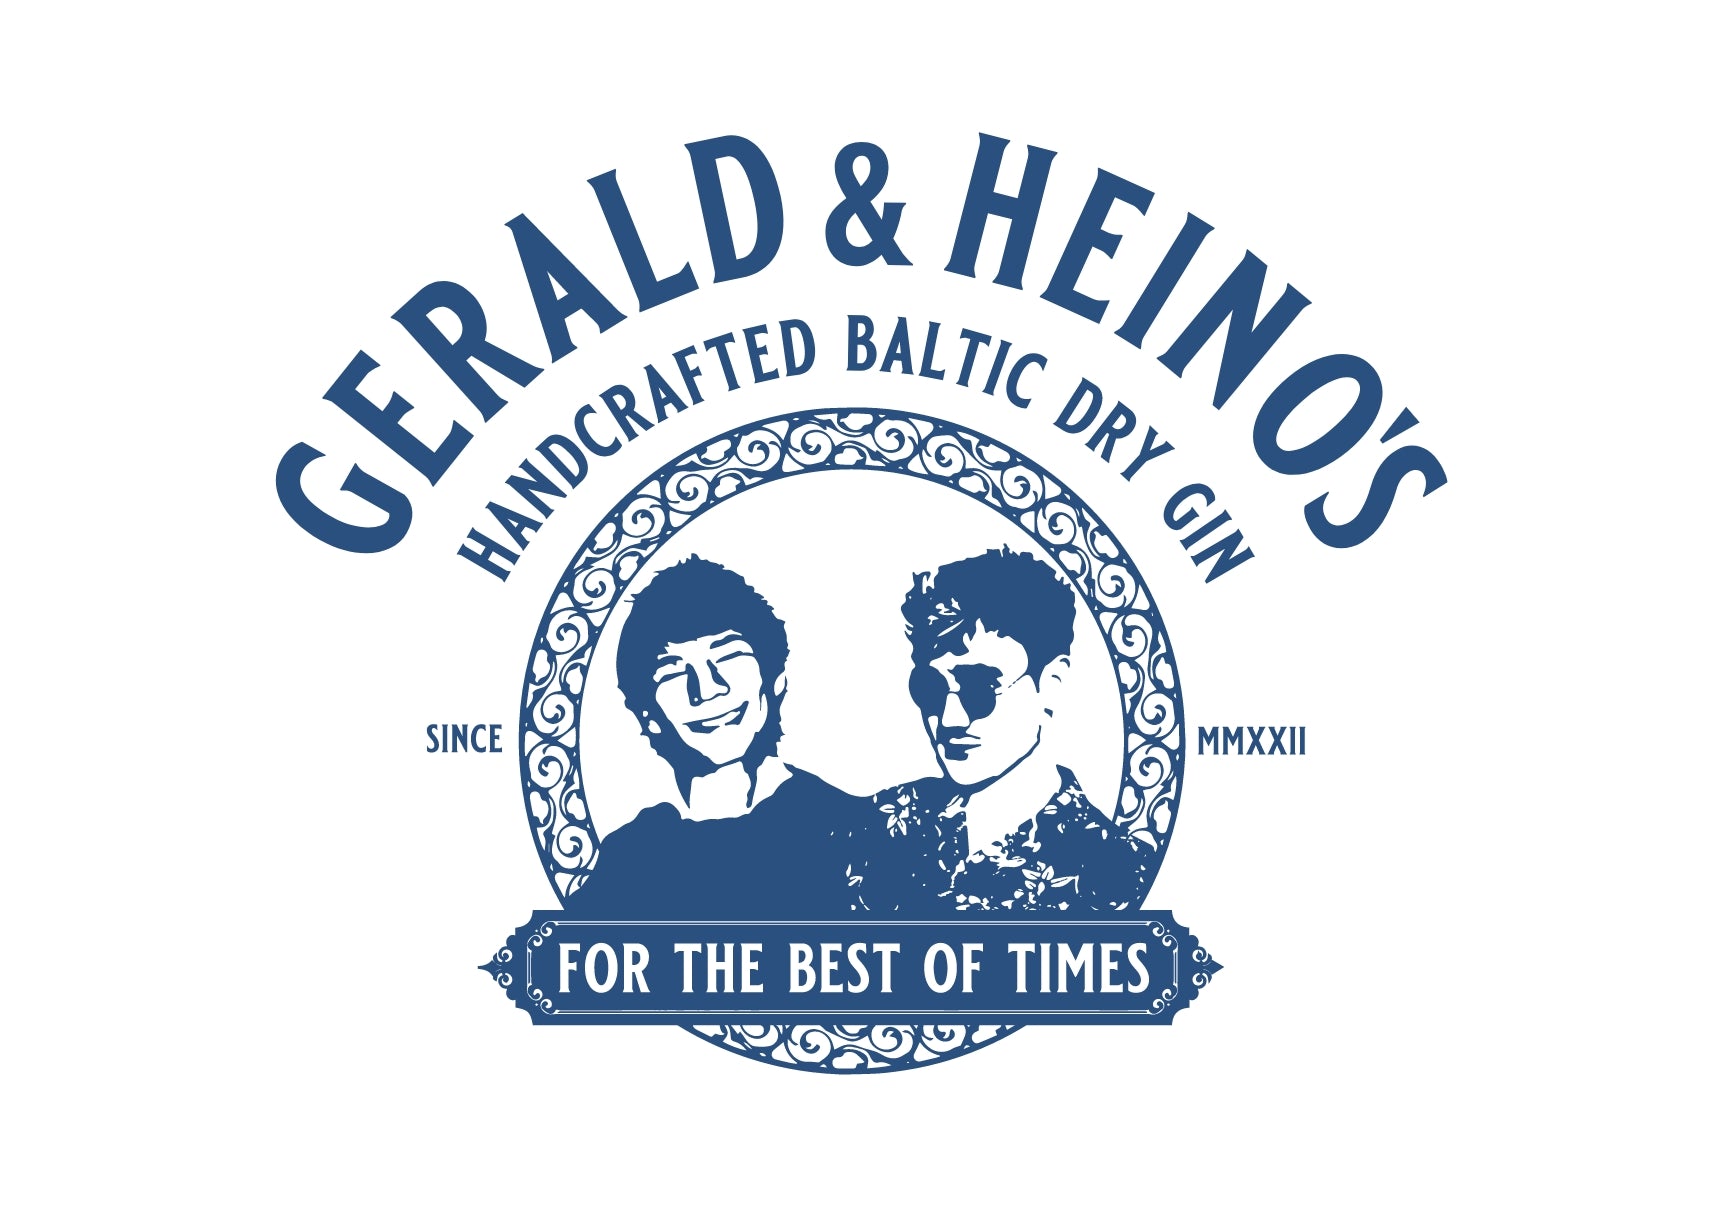 Gerald und Heino's